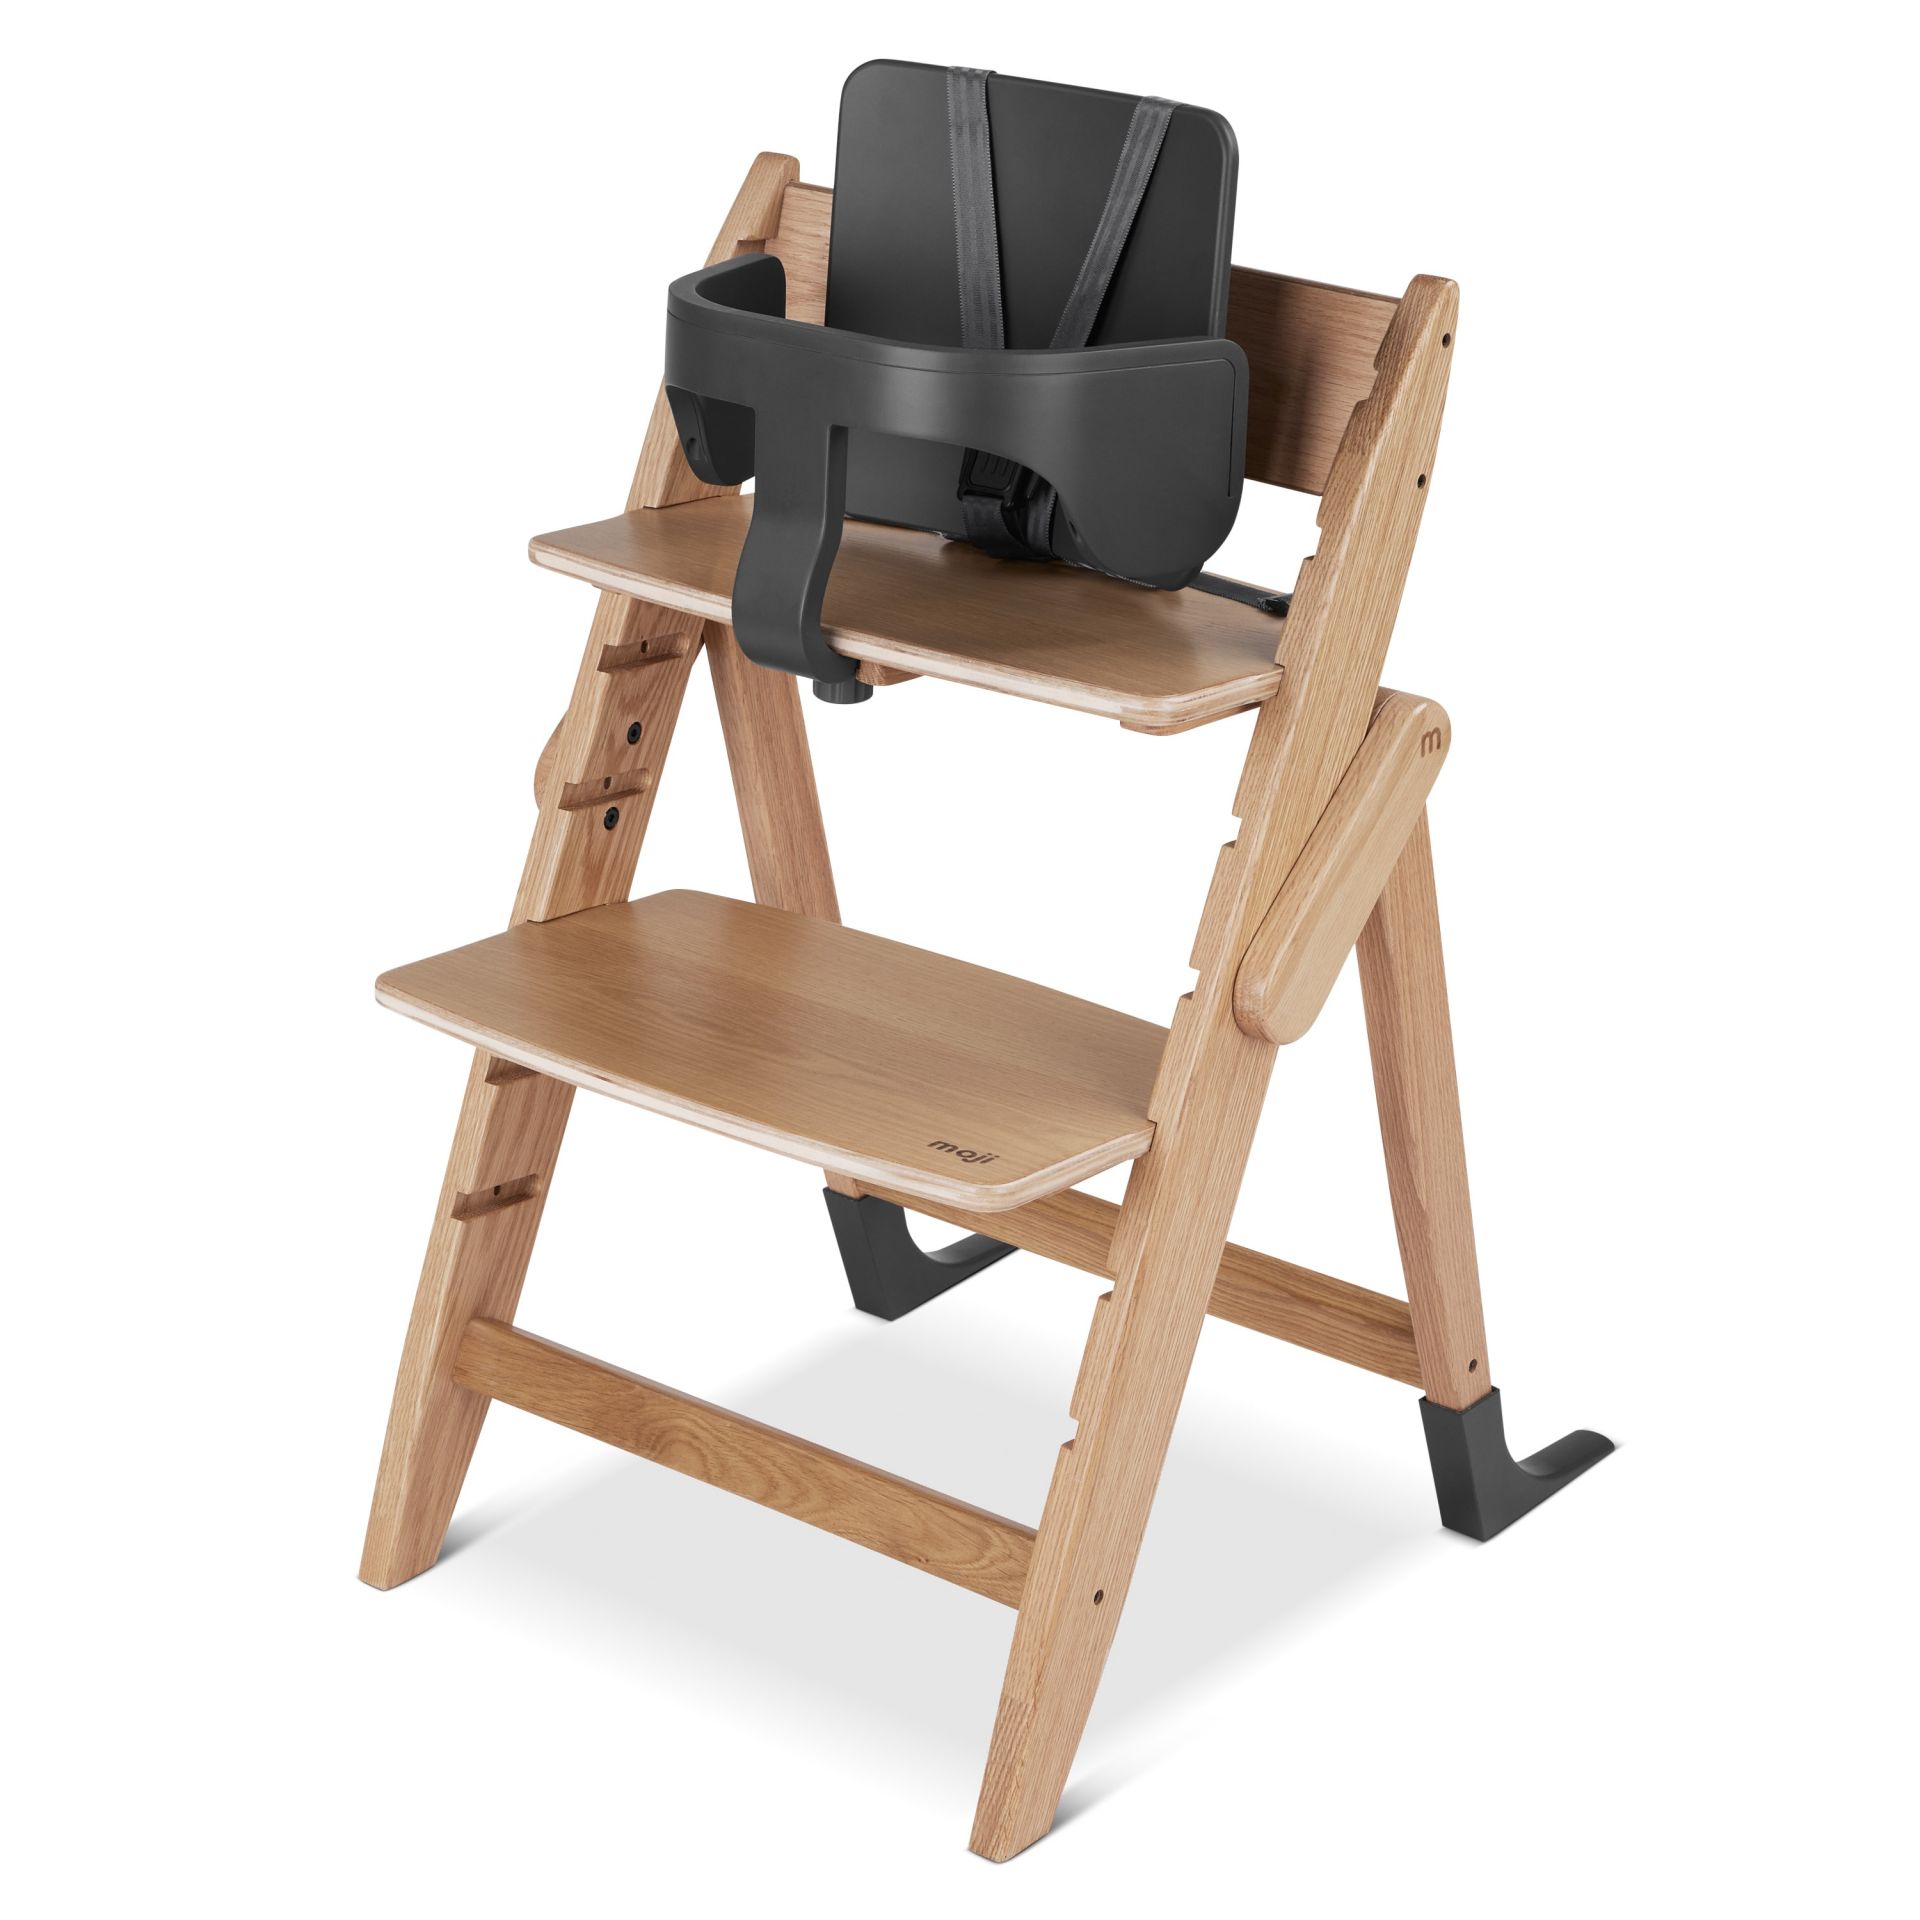 Ремни безопасности Moji by ABC-Design Harness для стульчика Yippy cloud 12003371601 evomove ремни безопасности для стульчика nomi